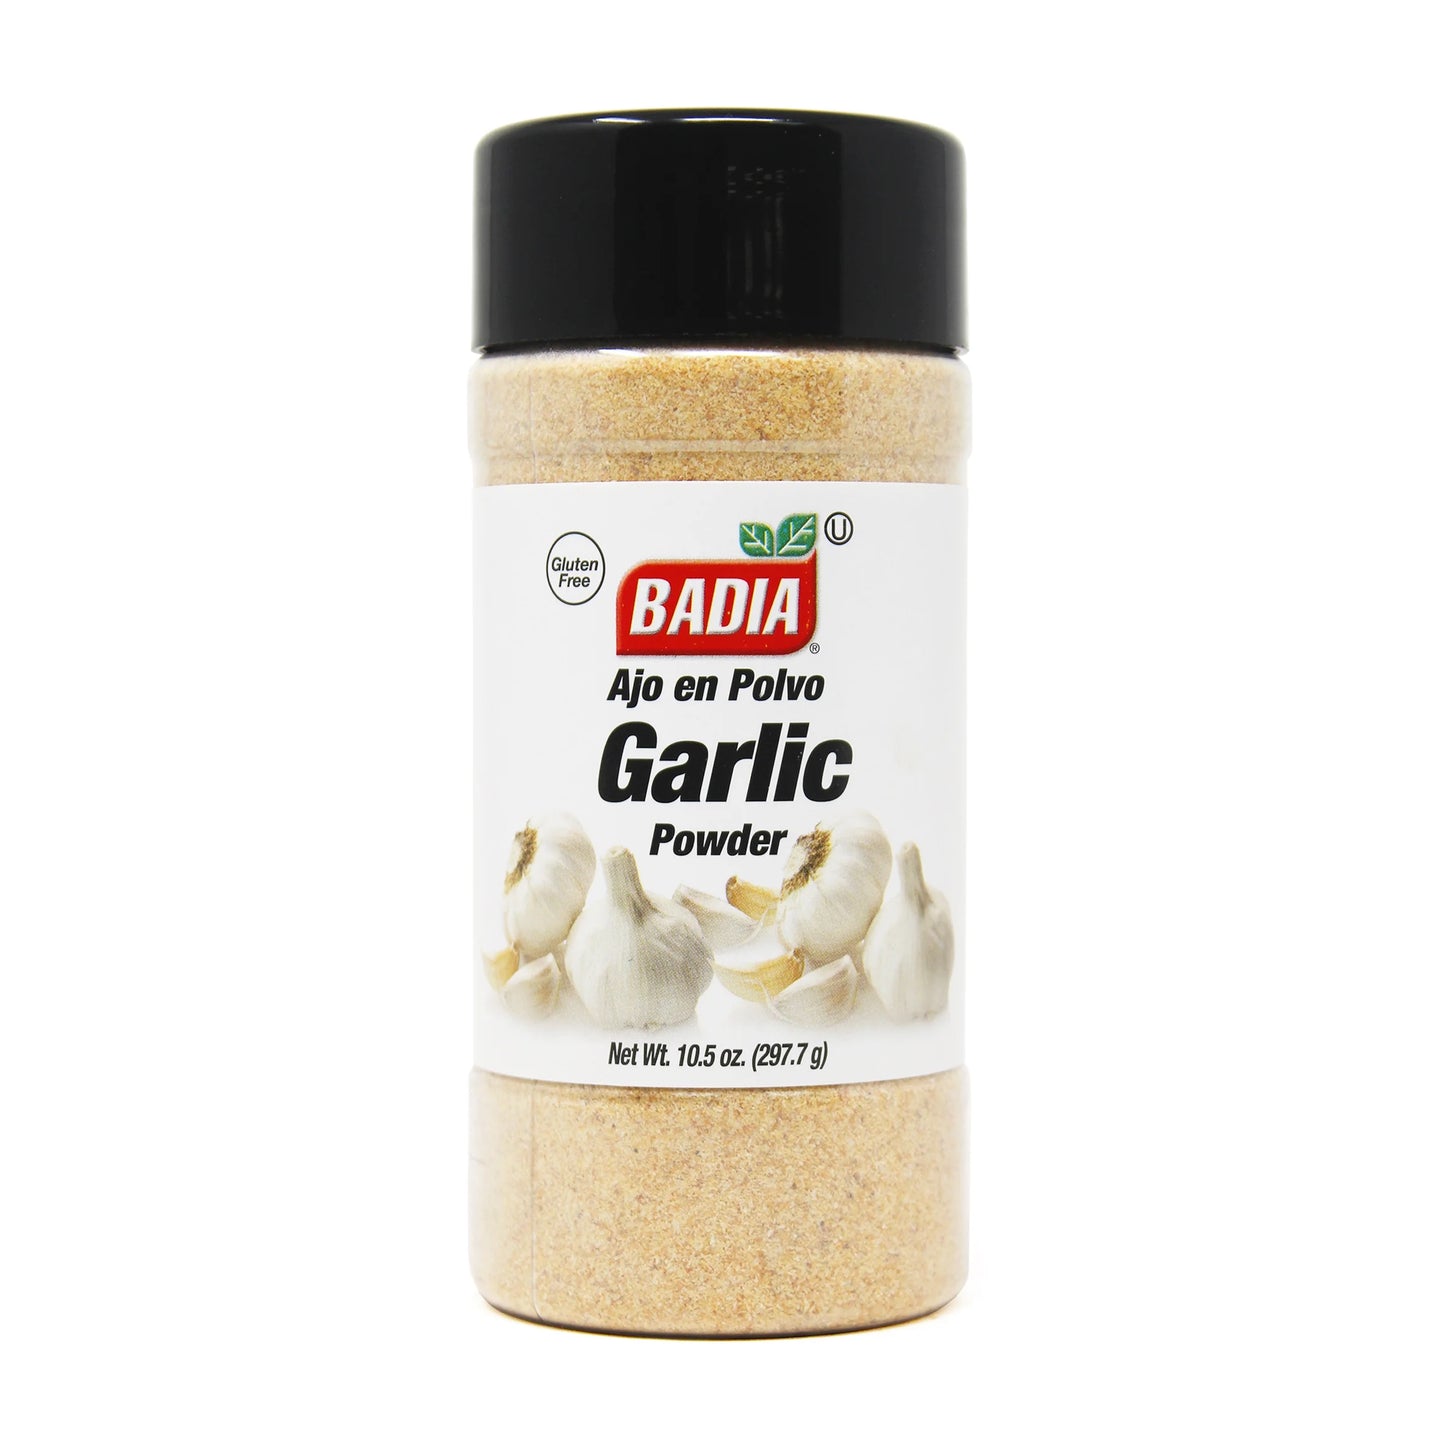 Badia Garlic Powder | 10.5oz